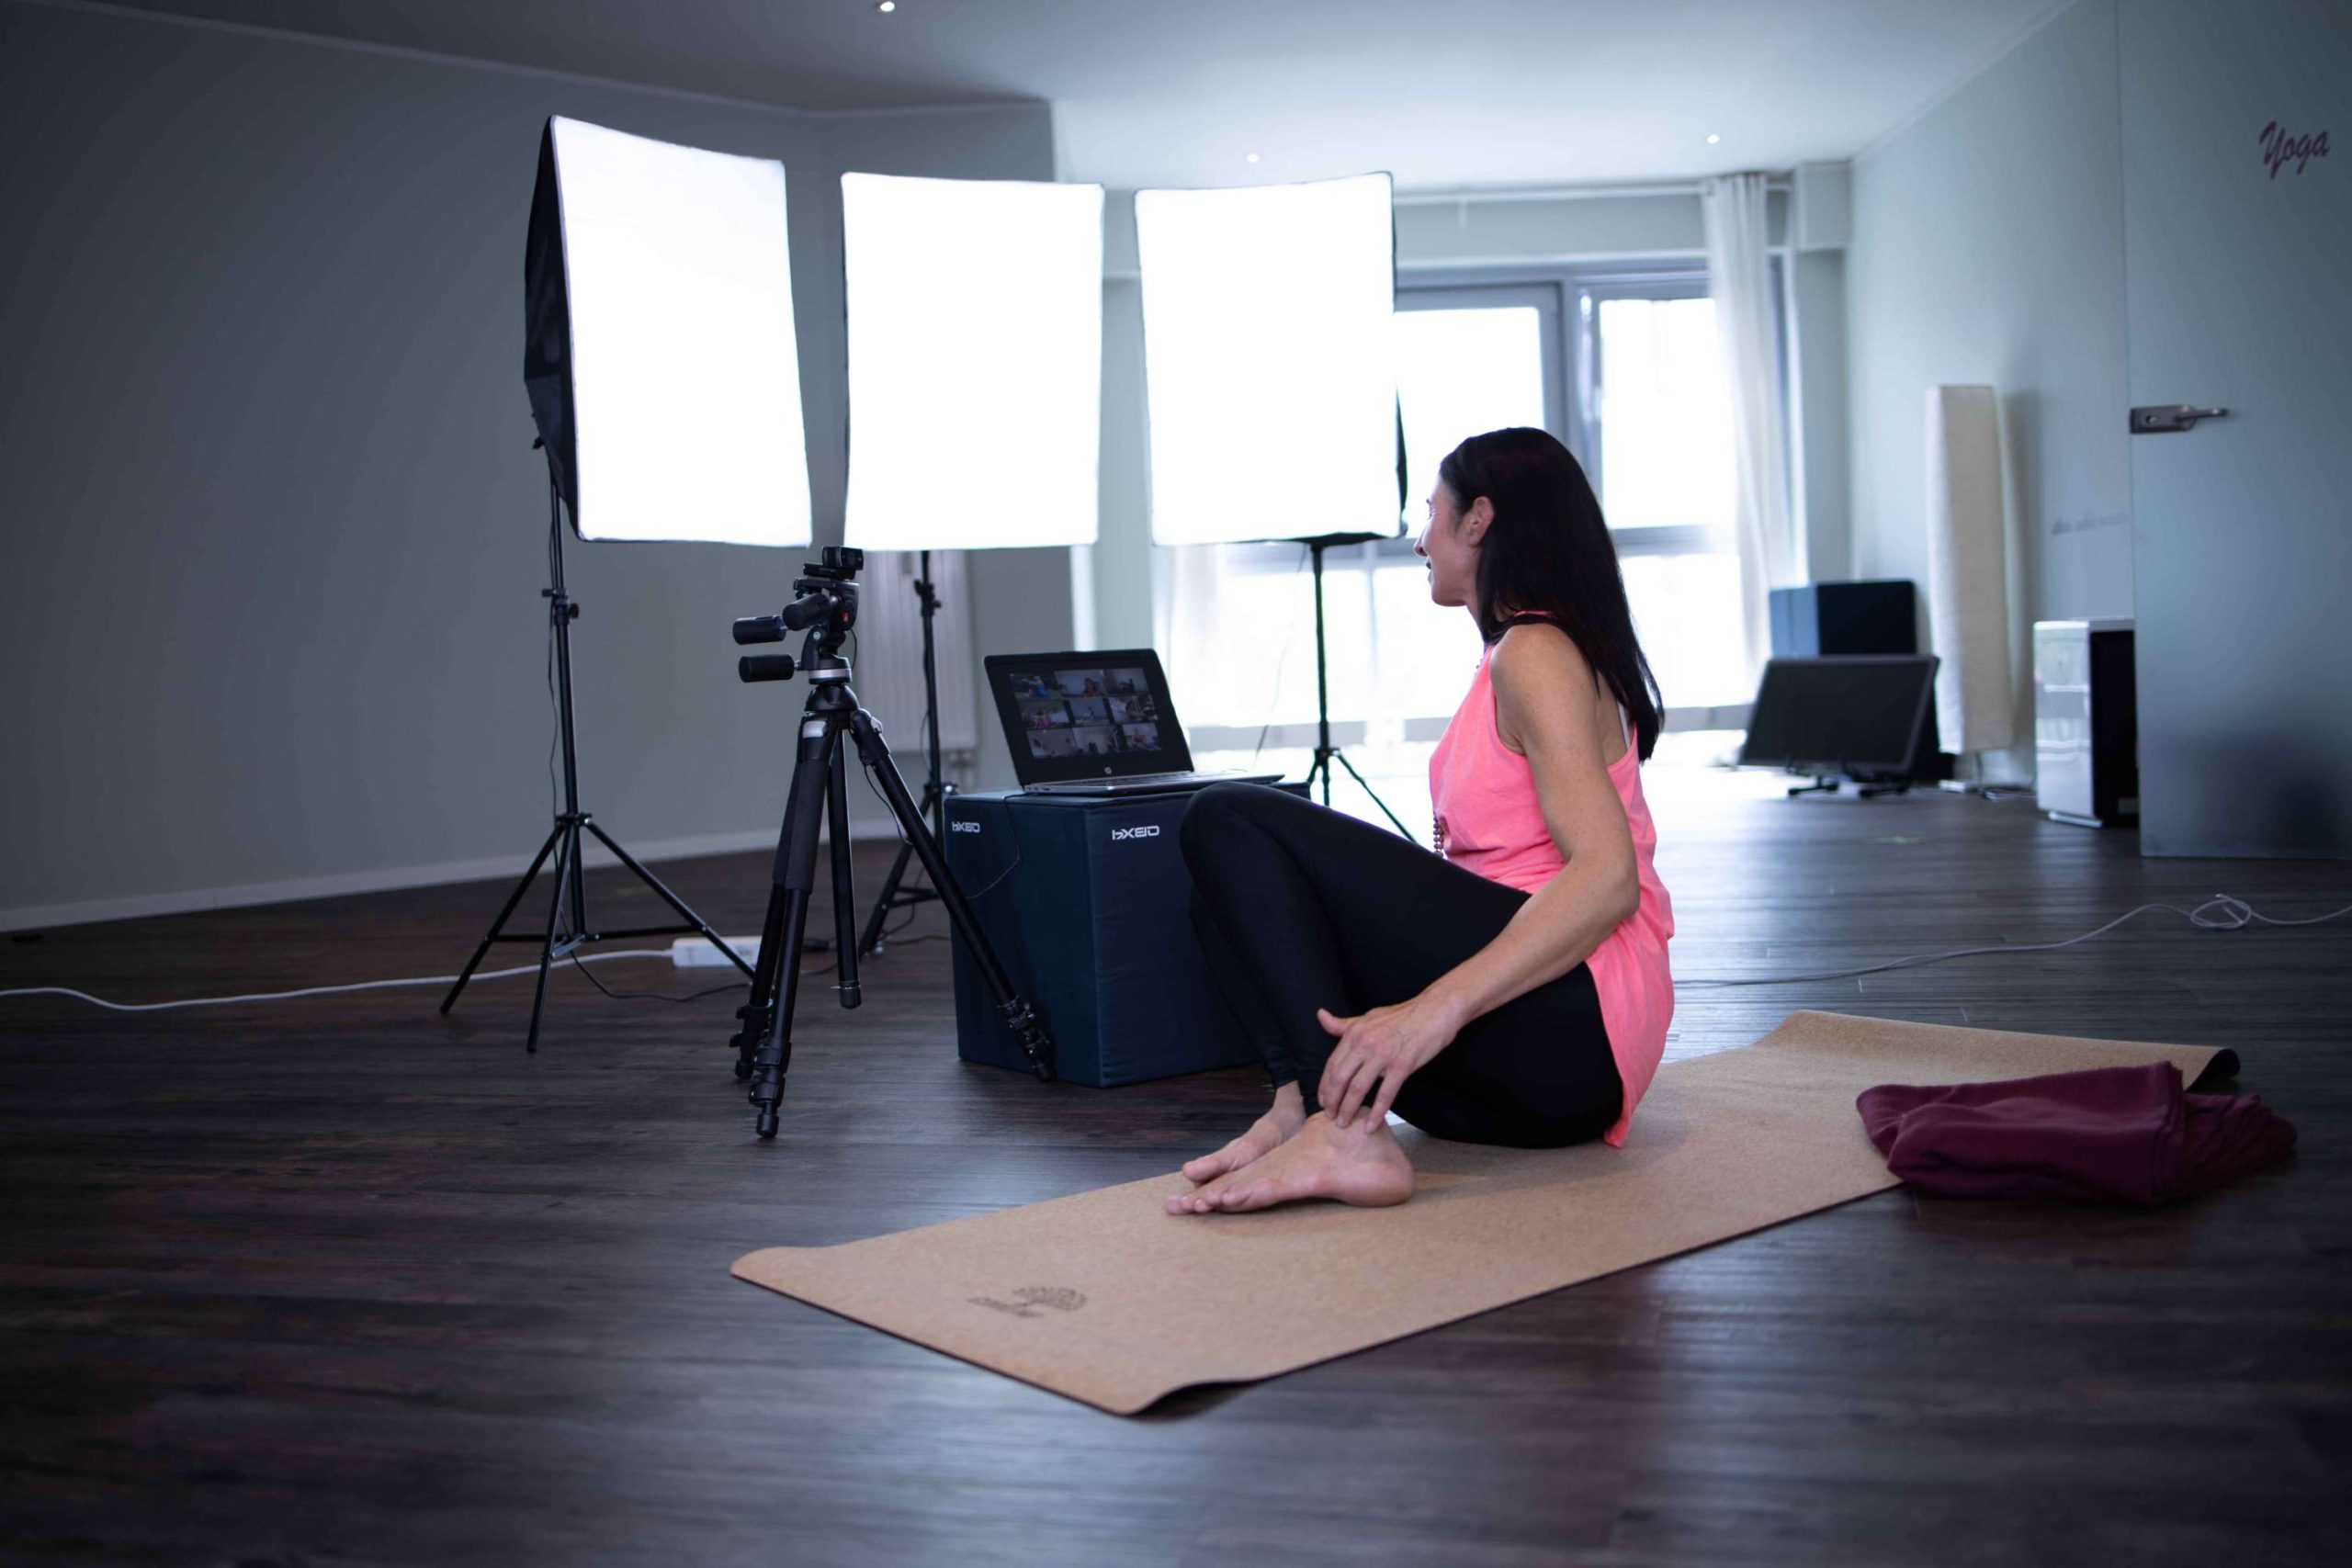 Referentin bei Online-Unterricht. Sie sitzt vor drei Lichtdisplays und einer Kamera auf einem Stativ auf ihrer Yogamatte mit Blick auf ihren ausgeklappten Laptop